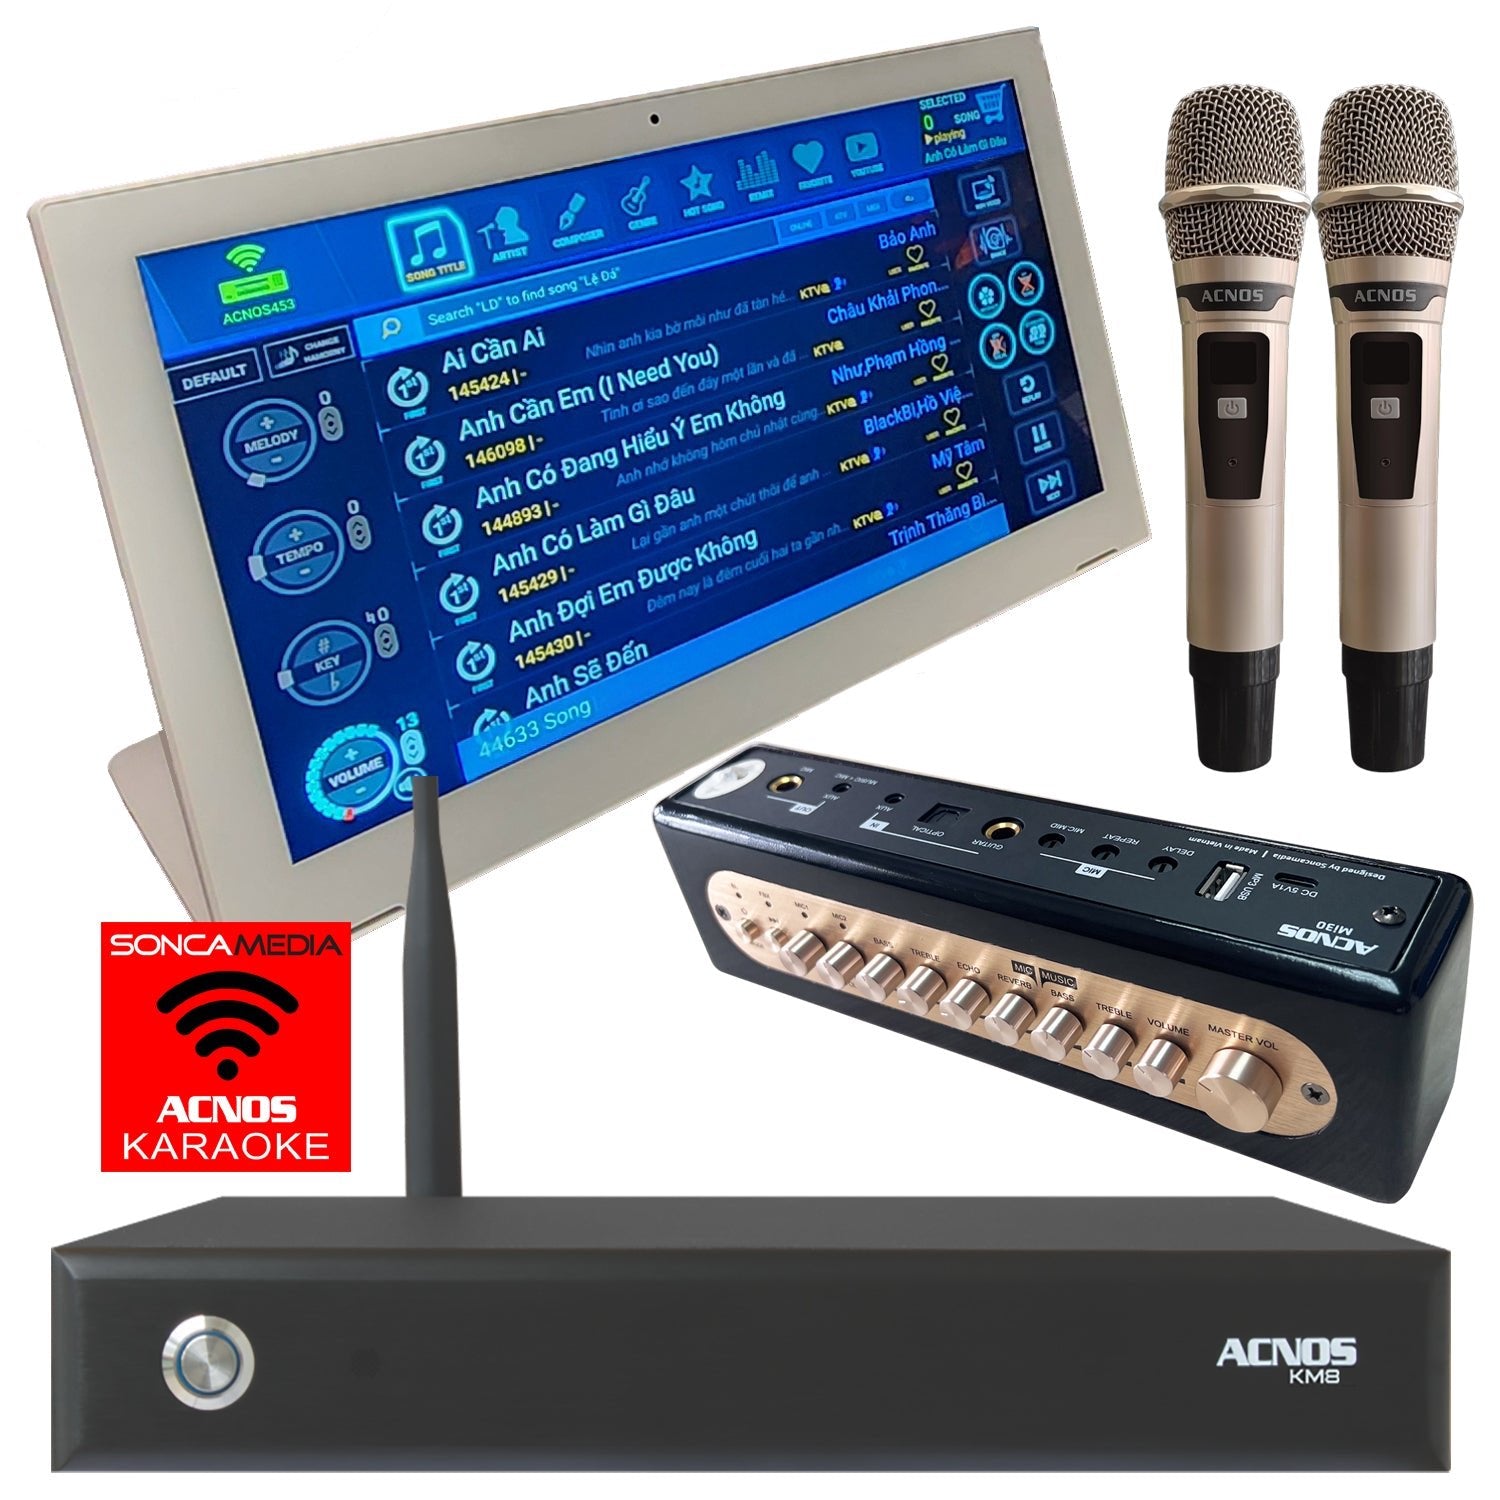 ACNOS KM - 8 + KTV Touch Screen + Mi - 30s Mixer (Mics) (Package Deal) - Karaoke Home Entertainment